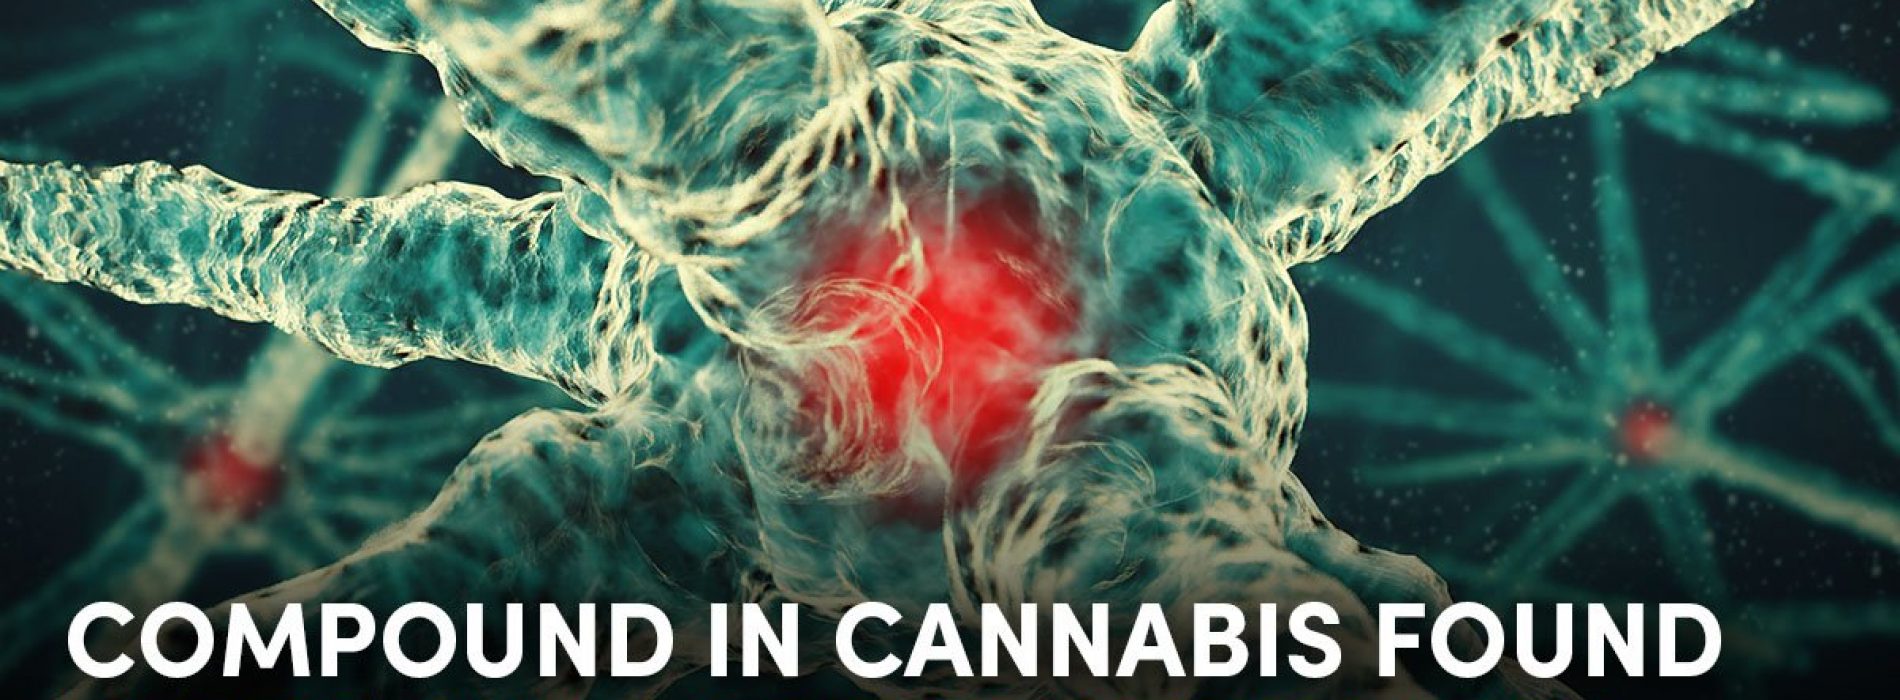 Cannabis geneest kanker. Zorgt dit bewijs dat deze vreselijke ziekte binnenkort tot het verleden behoort?